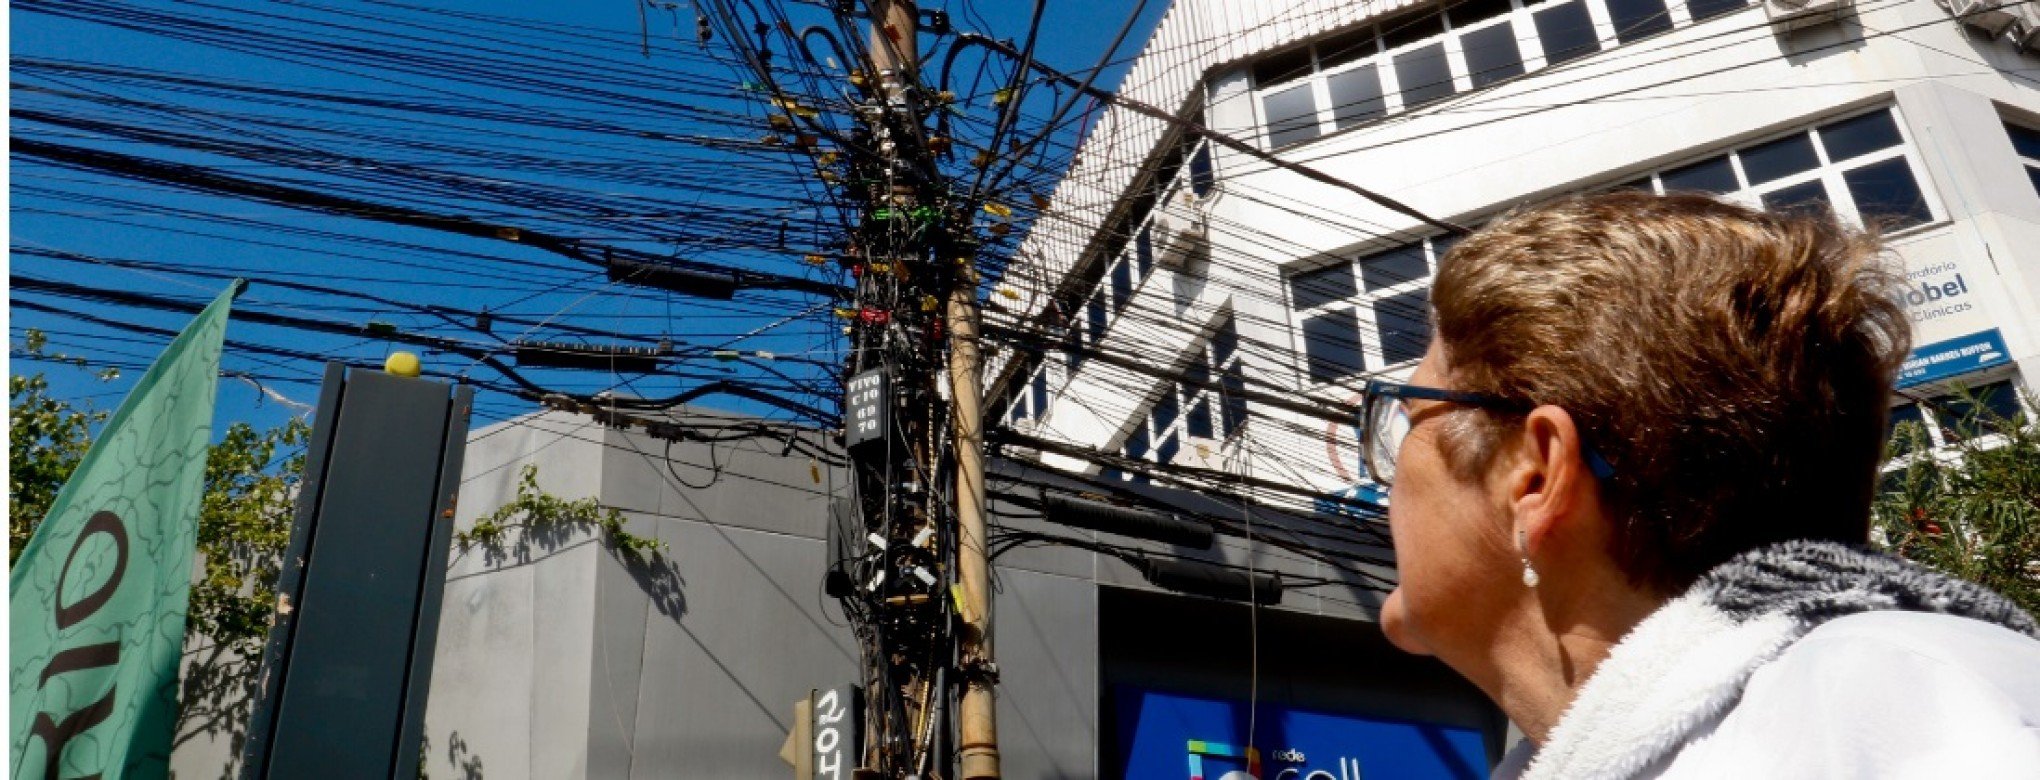 Governo Federal cria iniciativa para terminar com emaranhados de fios e cabos nos postes